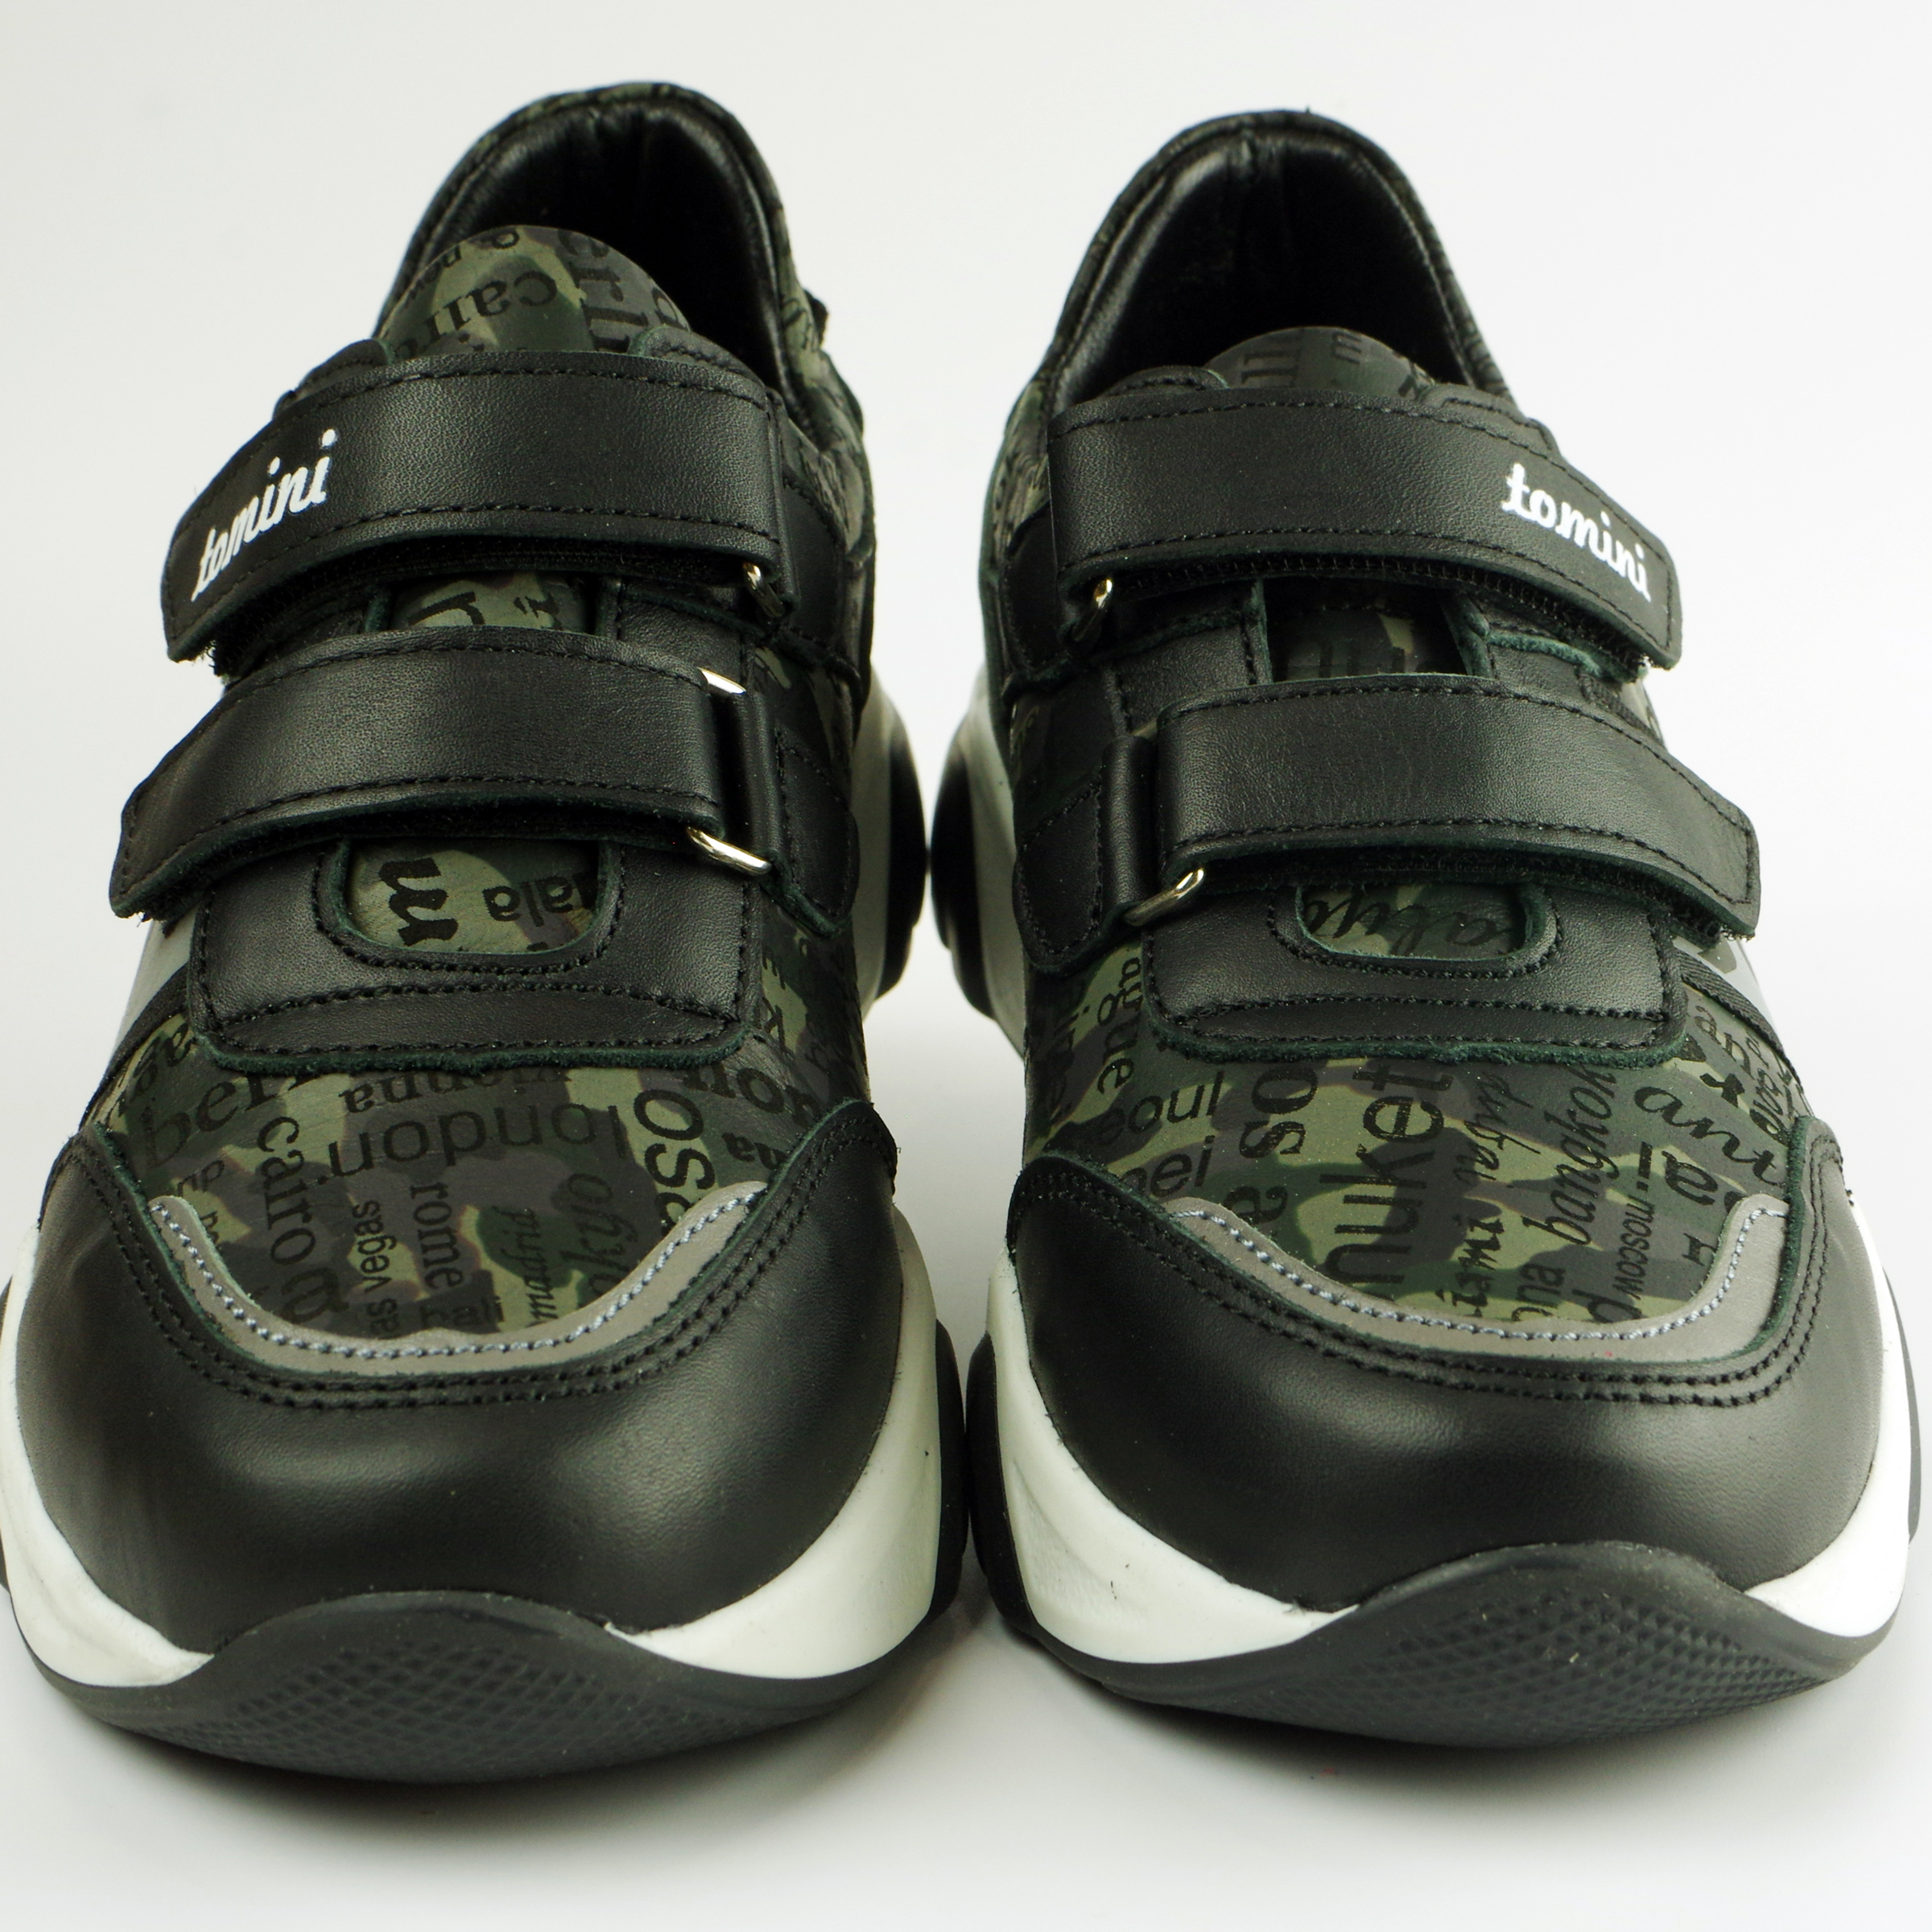 Кросівки дитячі (2115) для хлопчика, матеріал Натуральна шкіра, Чорний колір, 31-36 розміри – Sole Kids. Фото 3